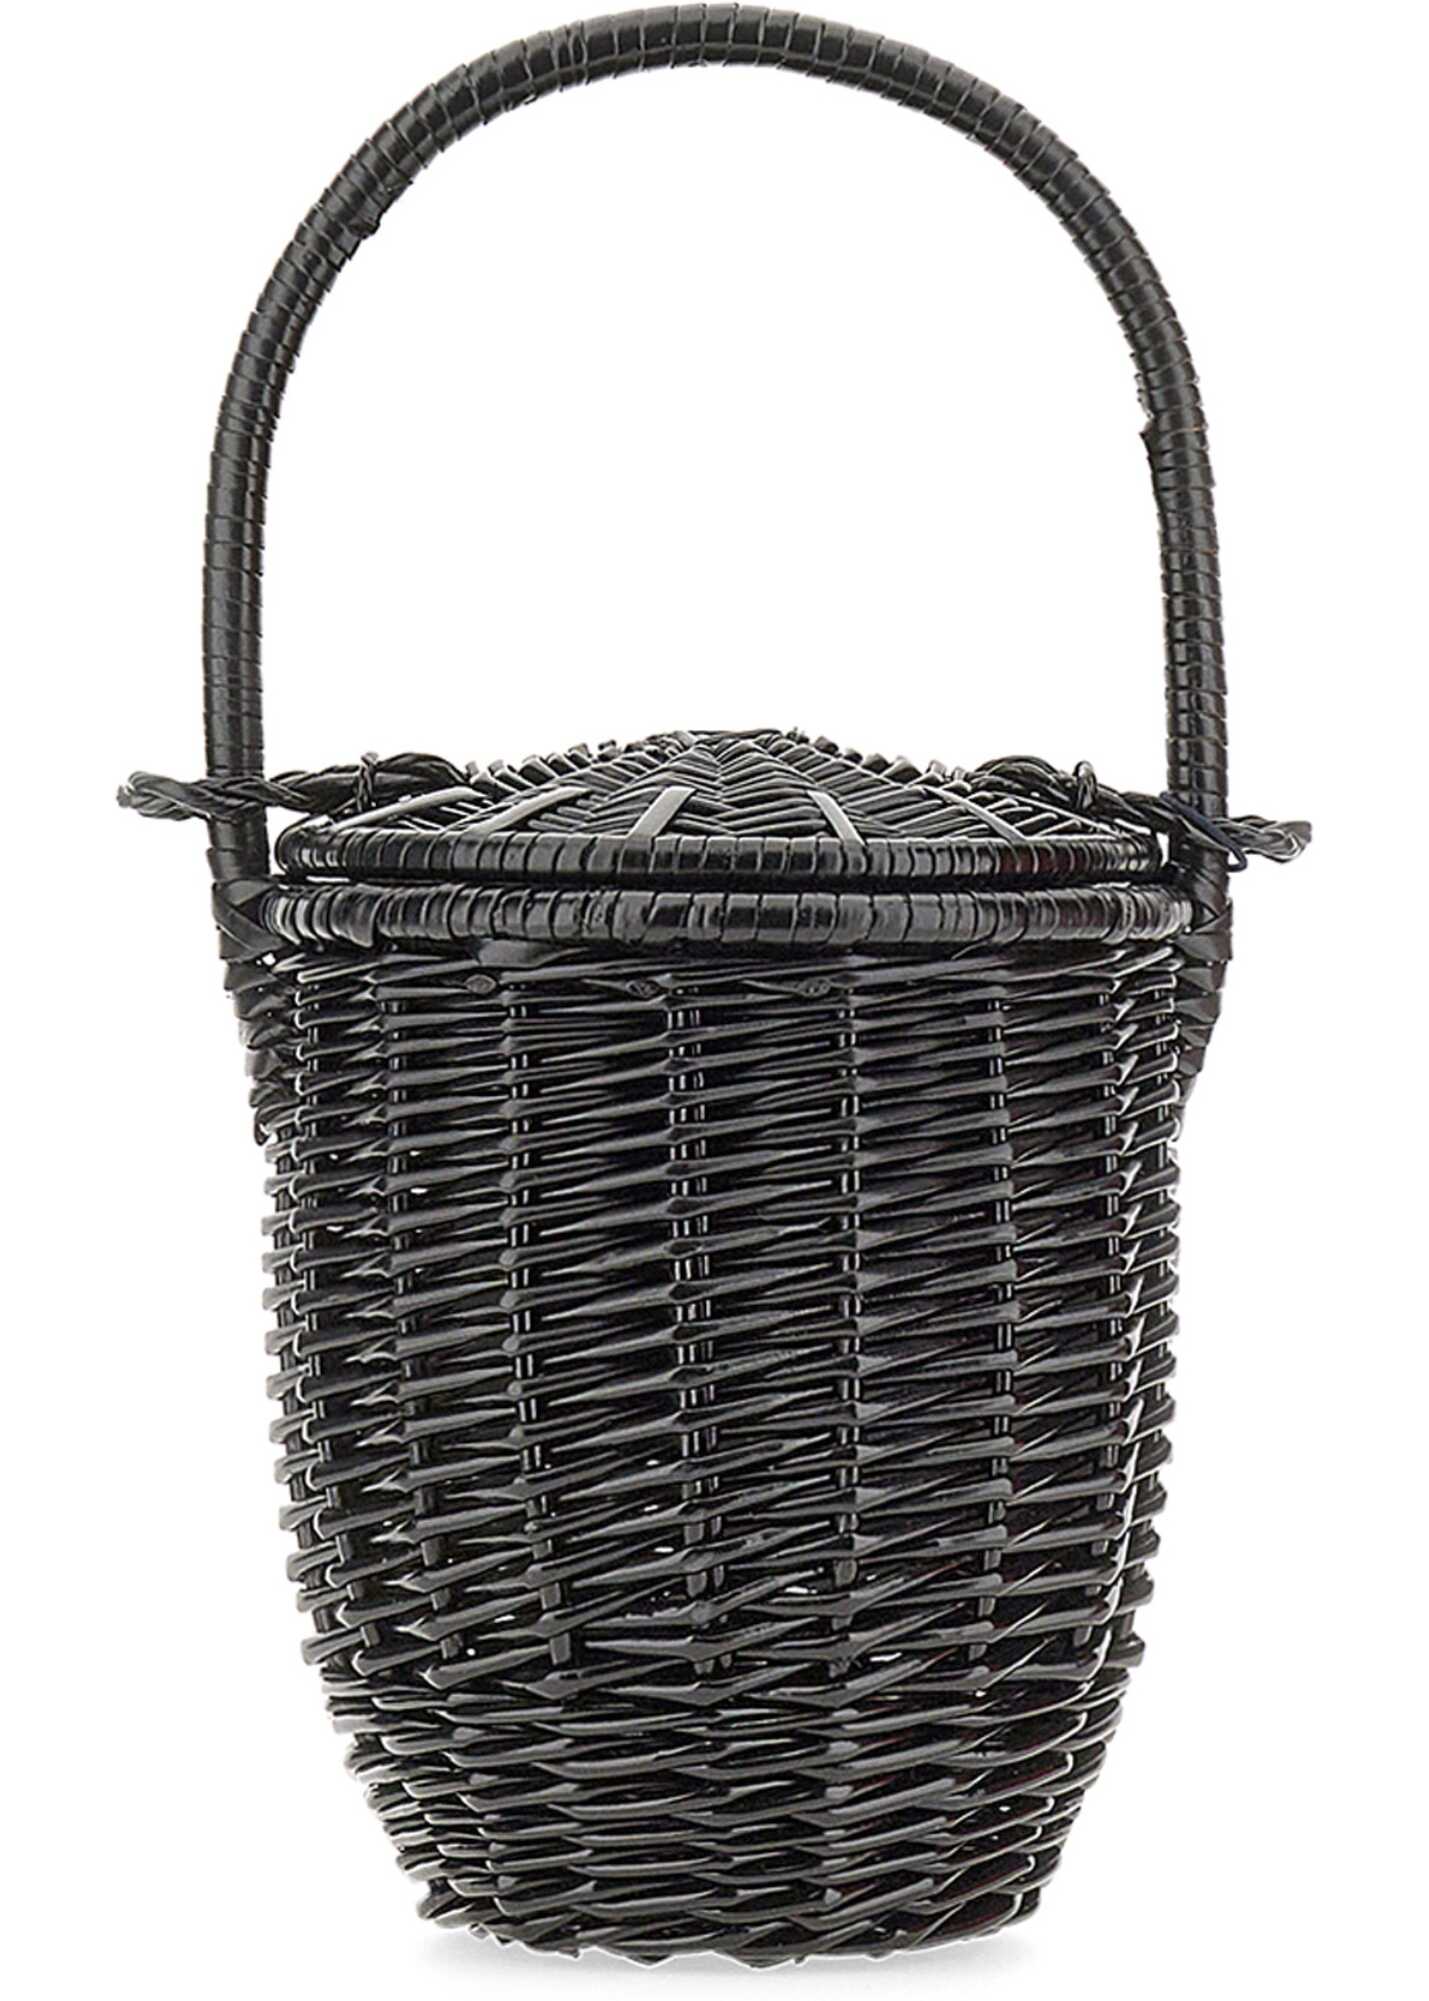 Patou Wicker Bucket Bag BLACK